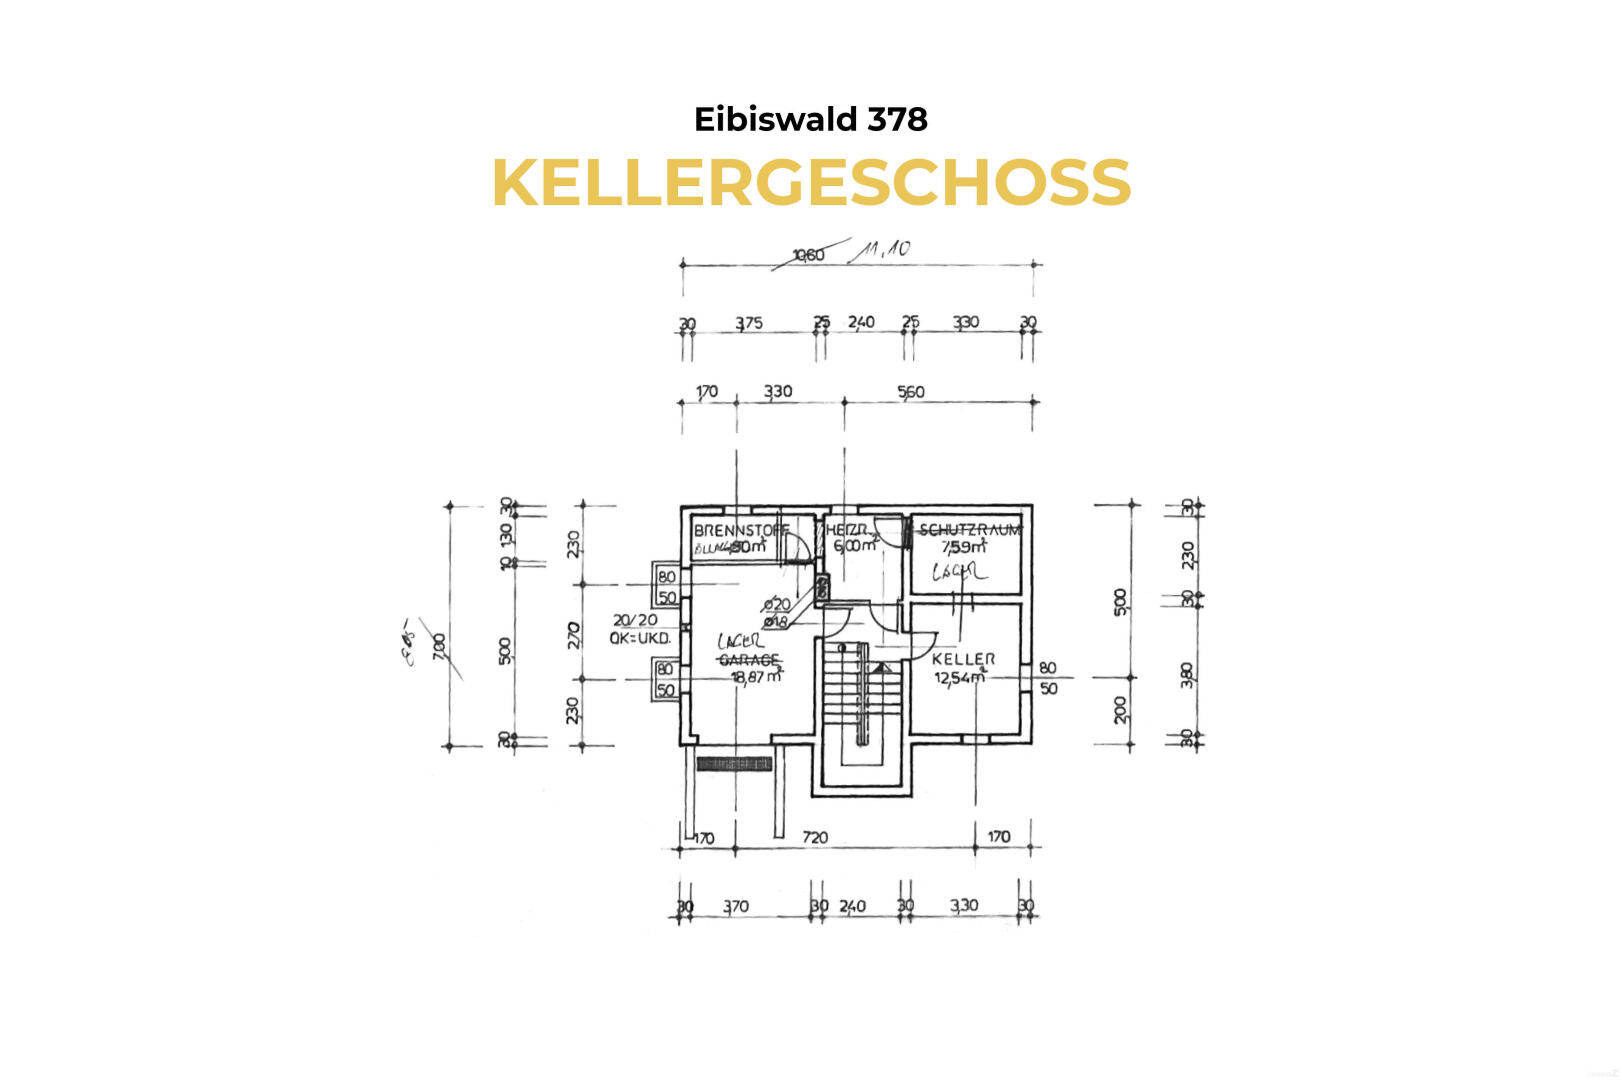 Haus zu kaufen: Eibiswald, 8552 Eibiswald - 3 Eibiswald 378 - Grundriss KG